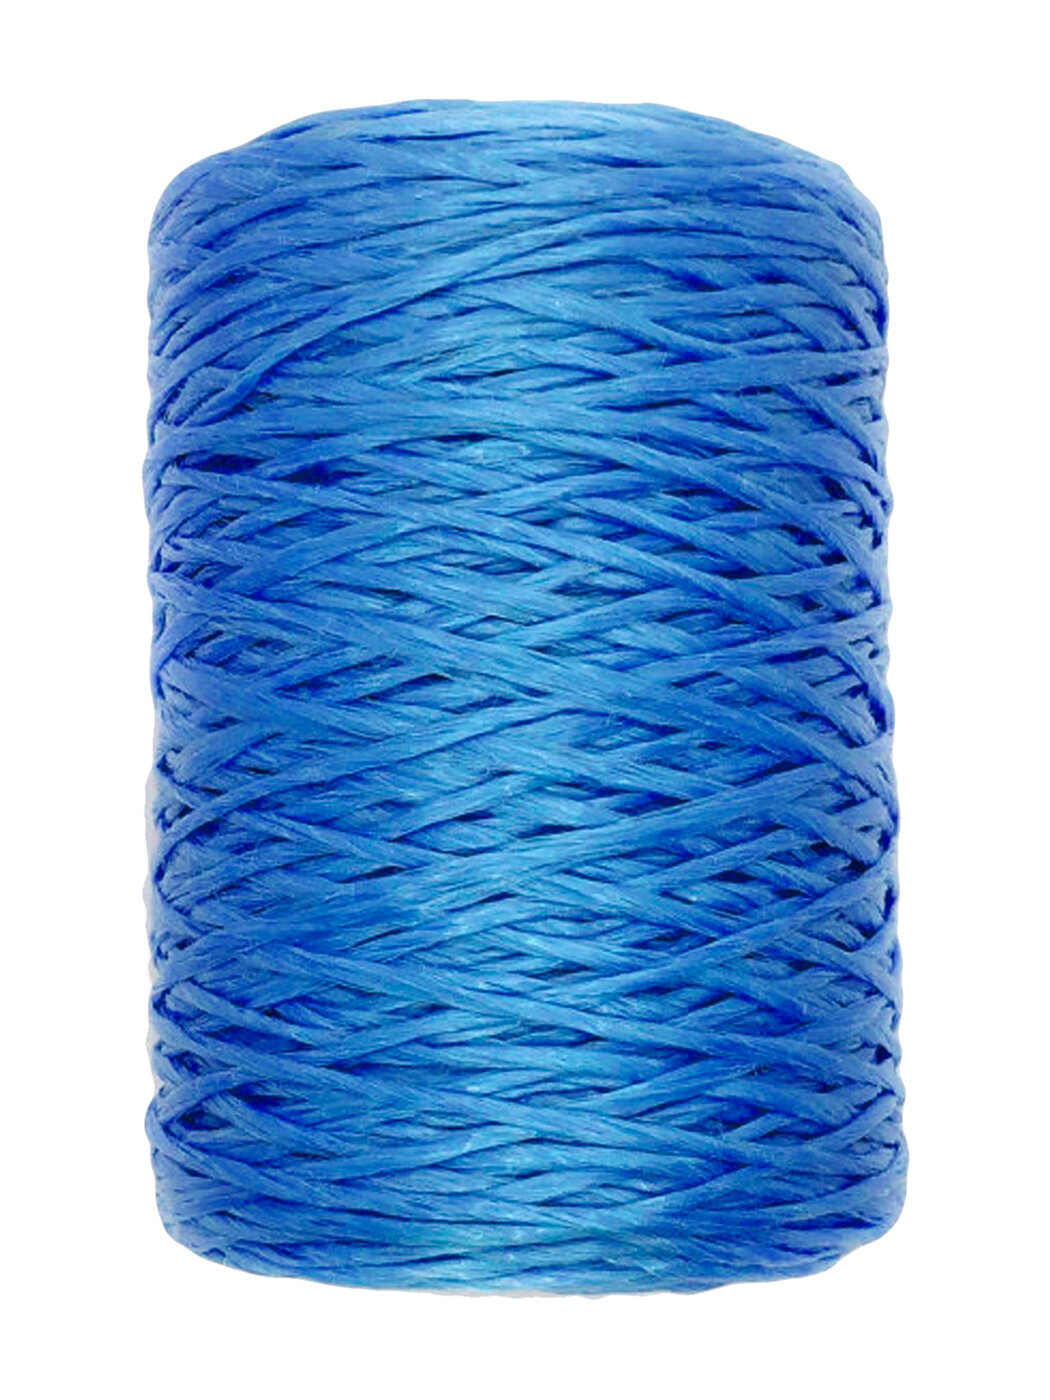 Шпагат капроновый тепличный синий, с ультрафиолетовой защитой, длиной 1000 метров